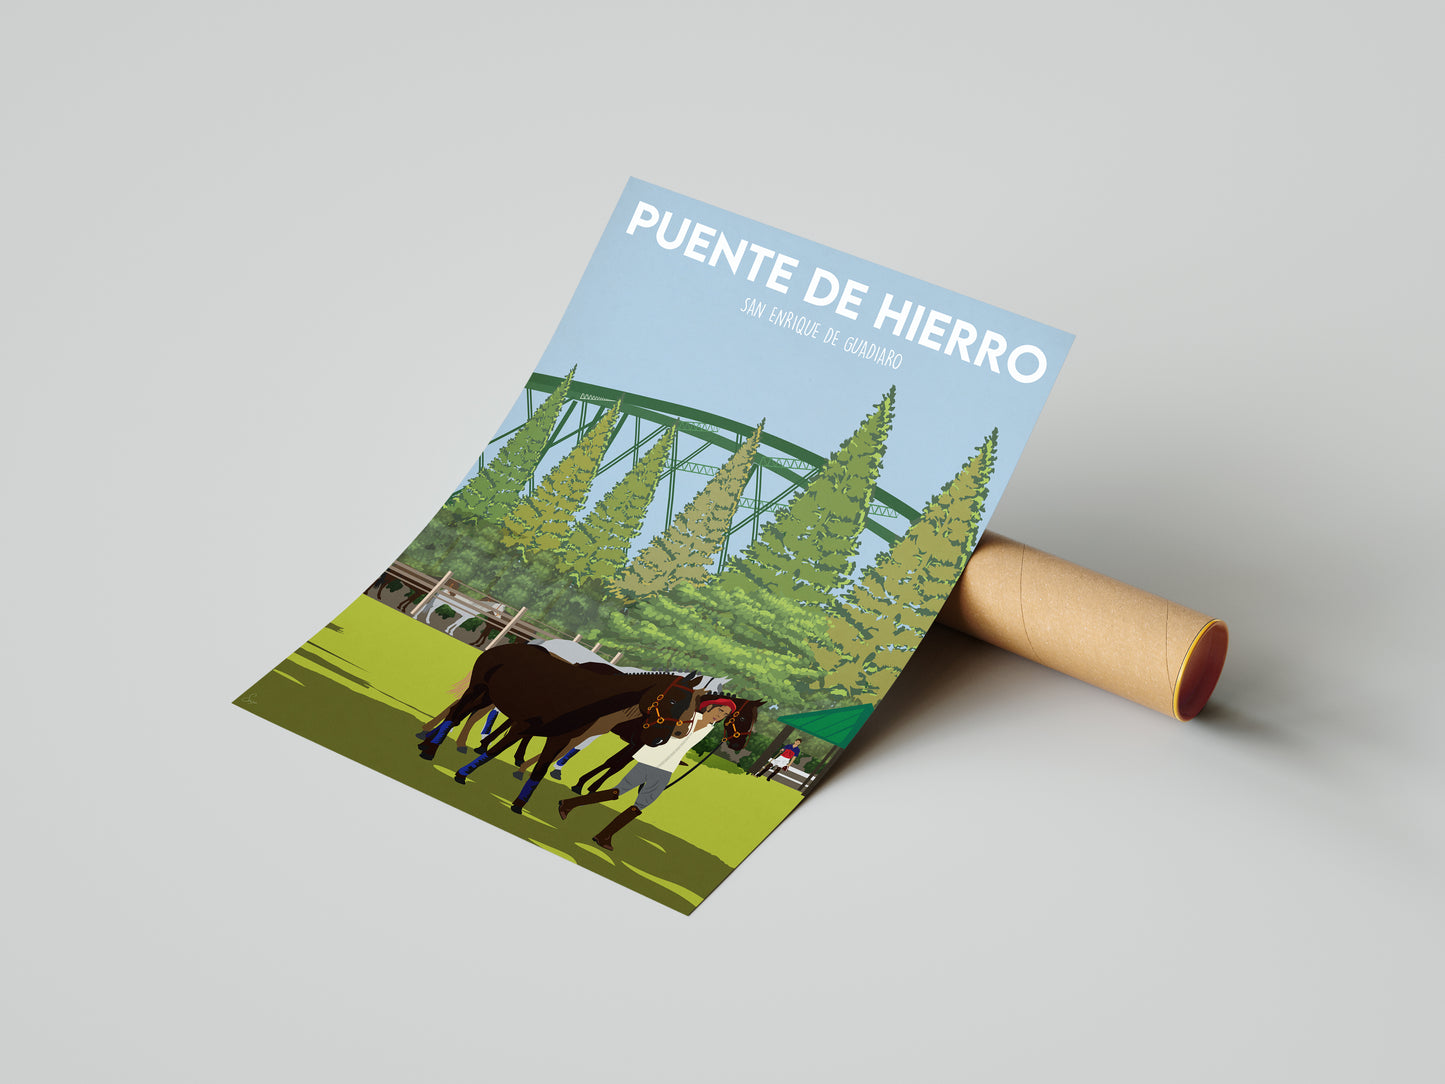 Vintage inspired travel print of Santa Maria Polo Club Puente De Hierro Sotogrande